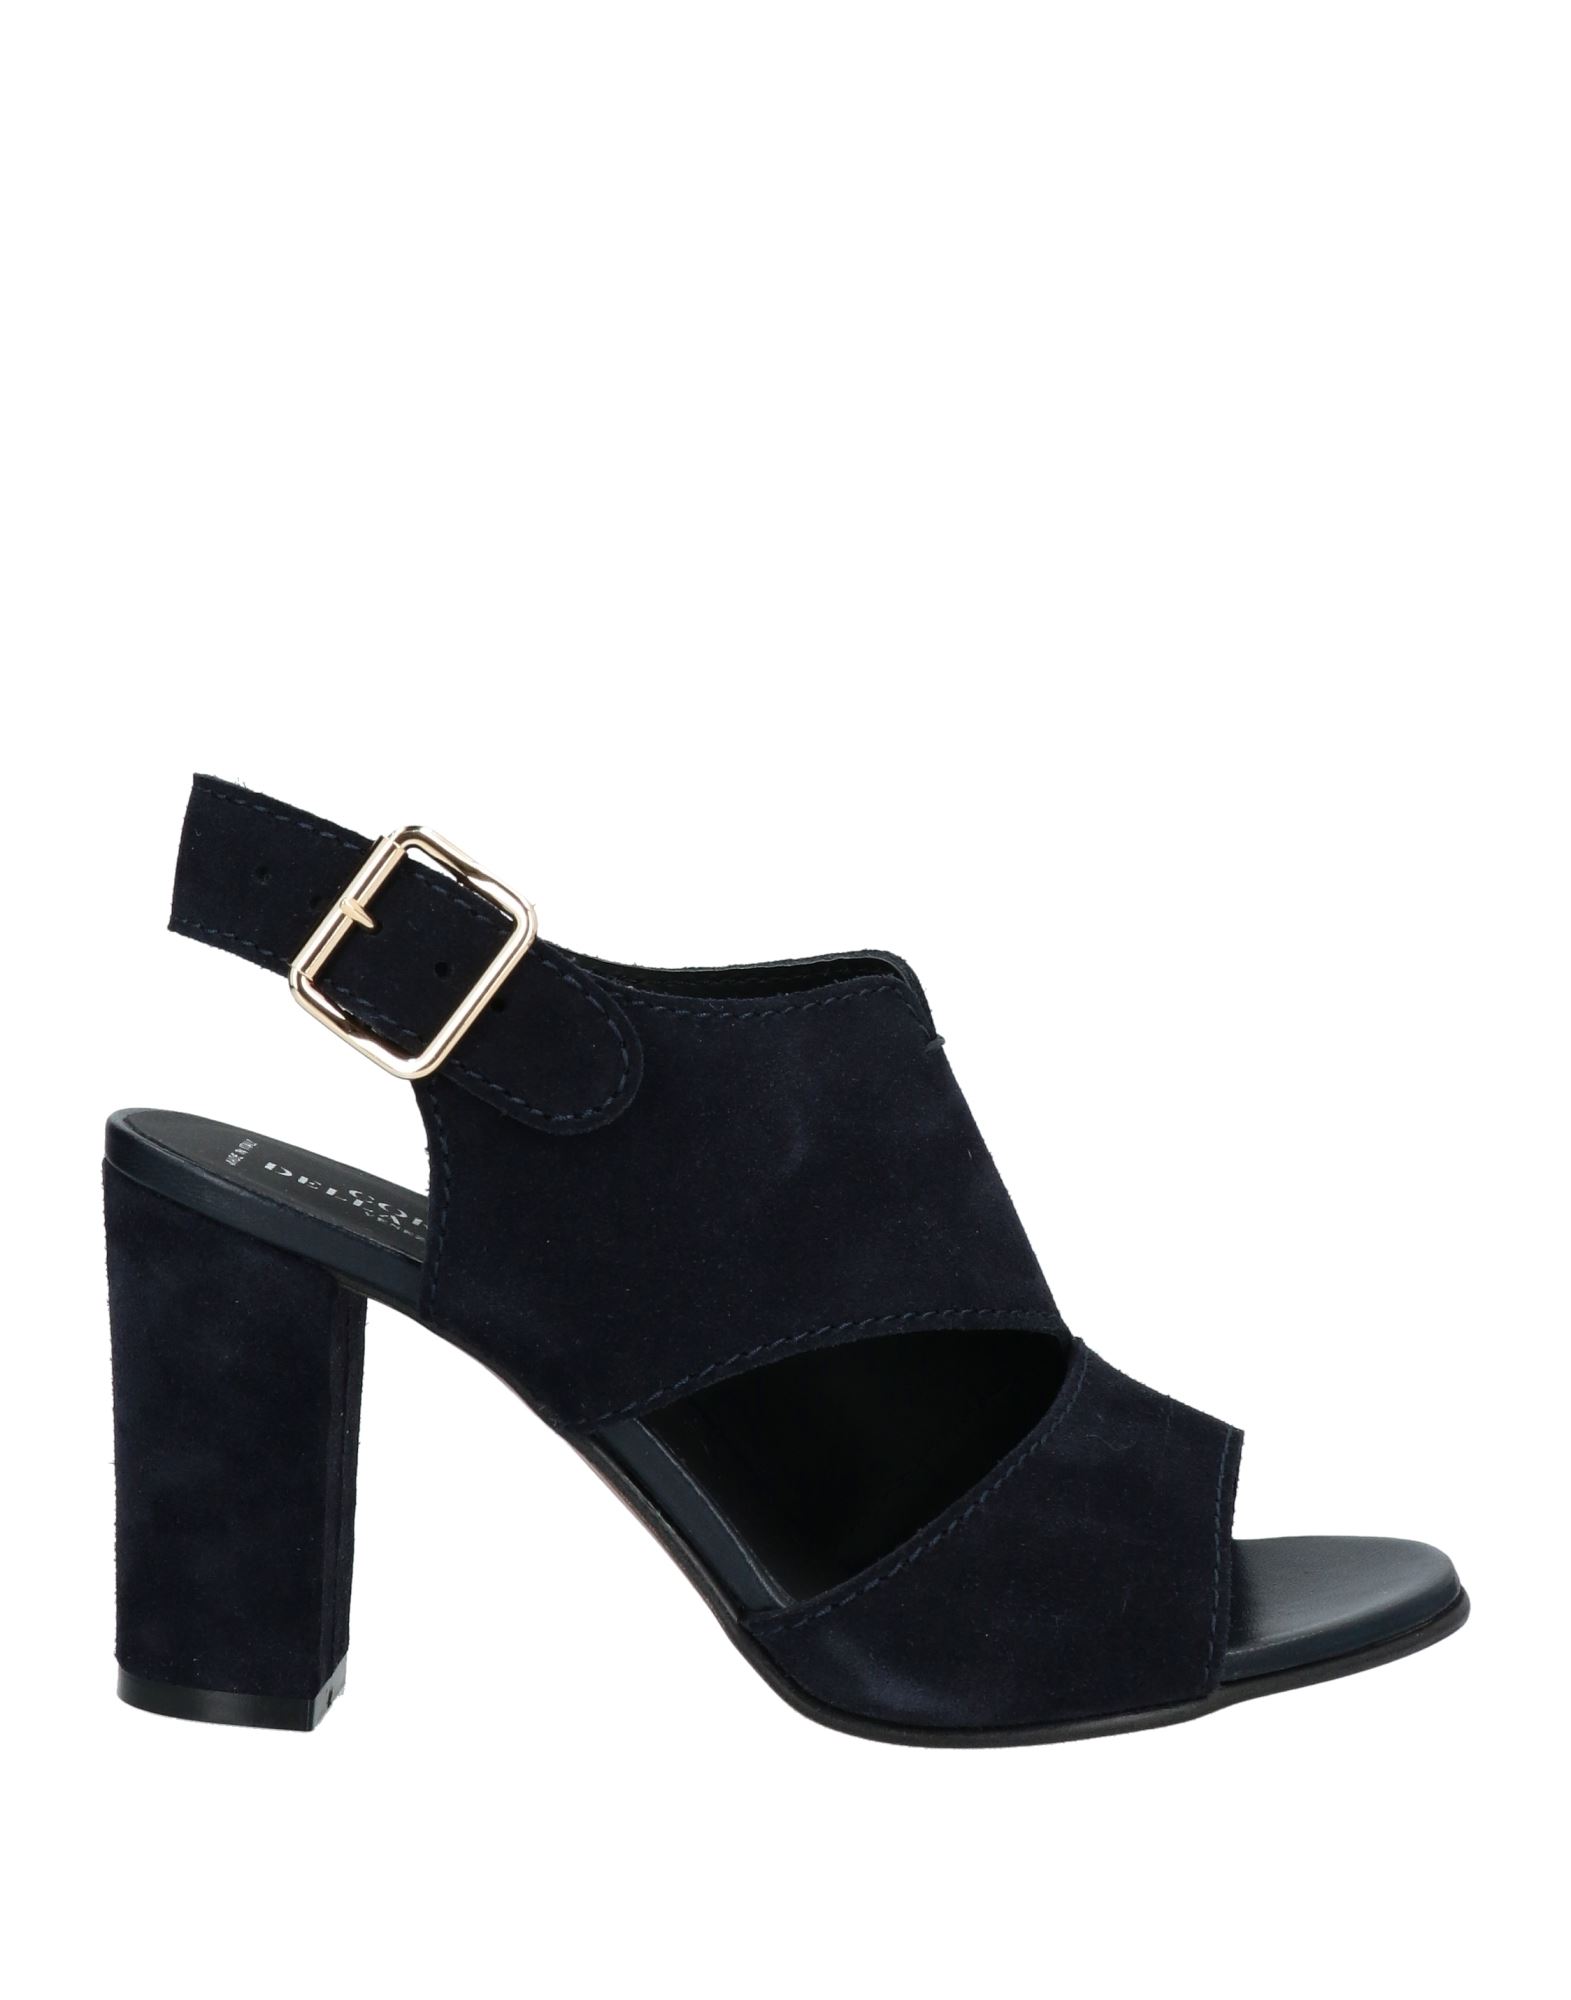 Shop La Corte Della Pelle By Franco Ballin Woman Sandals Midnight Blue Size 8 Soft Leather